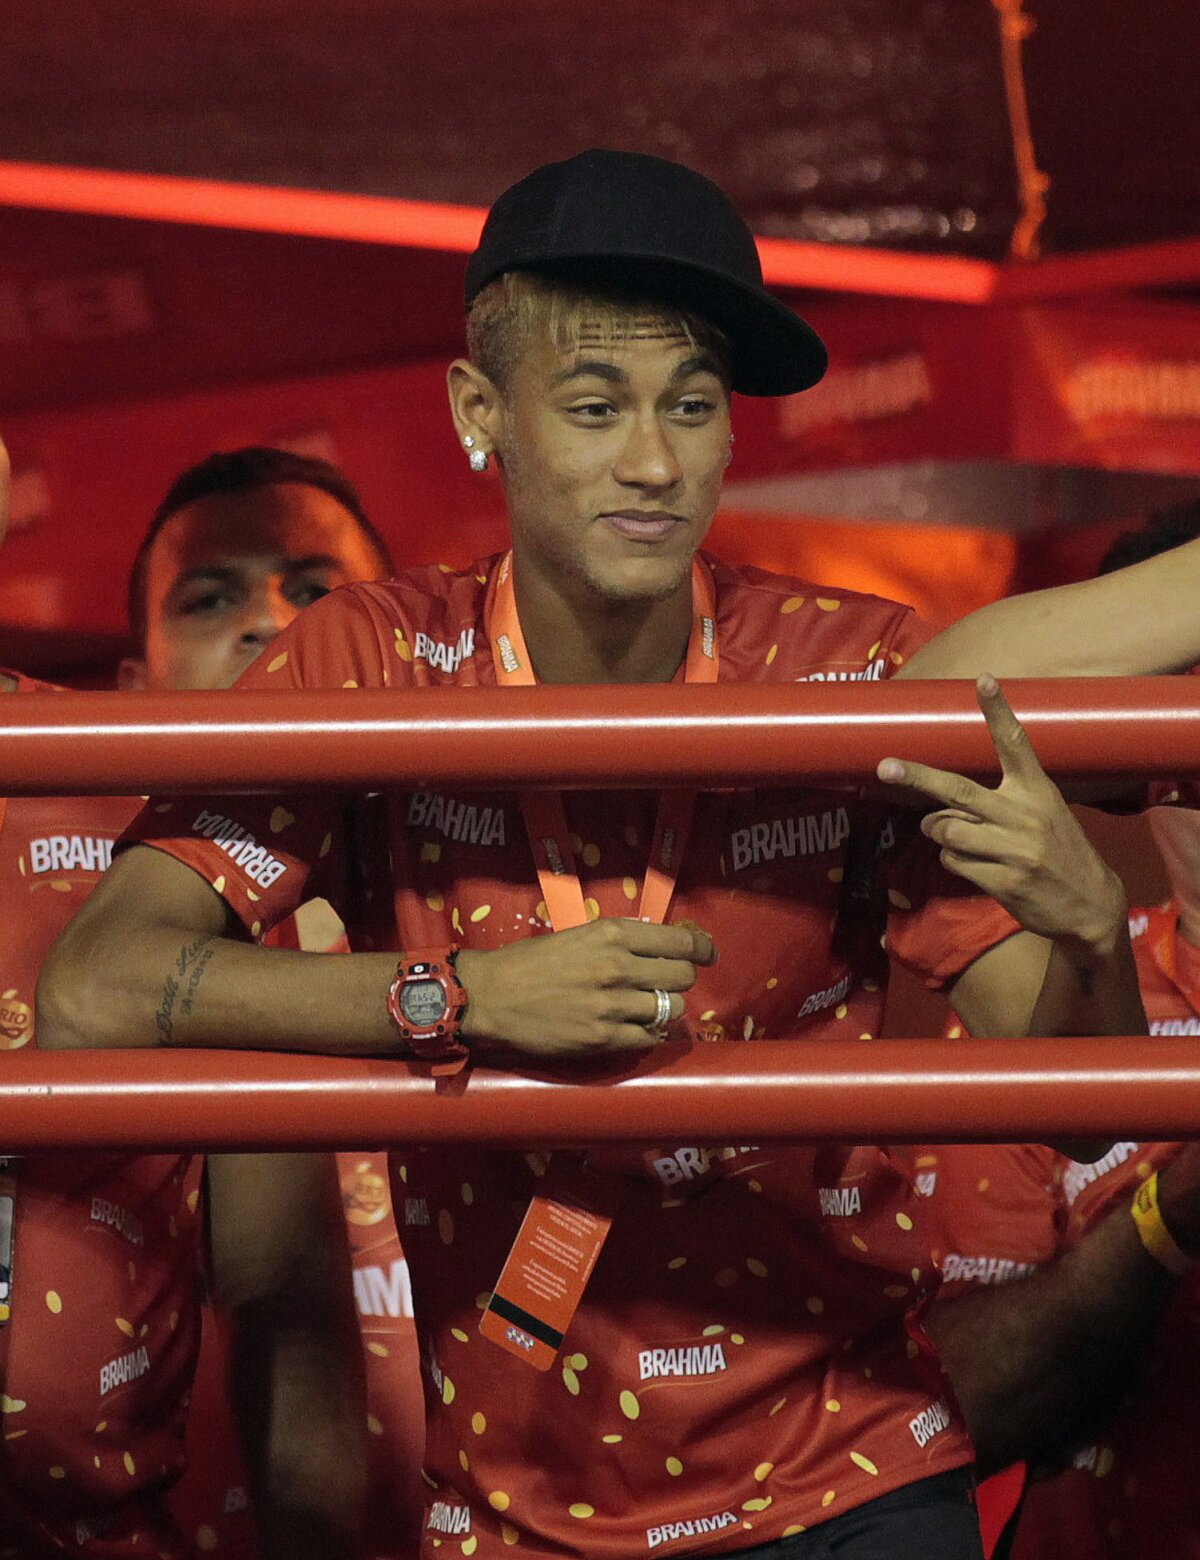 FOTO A început show-ul! Nici un Carnaval fără Neymar :D